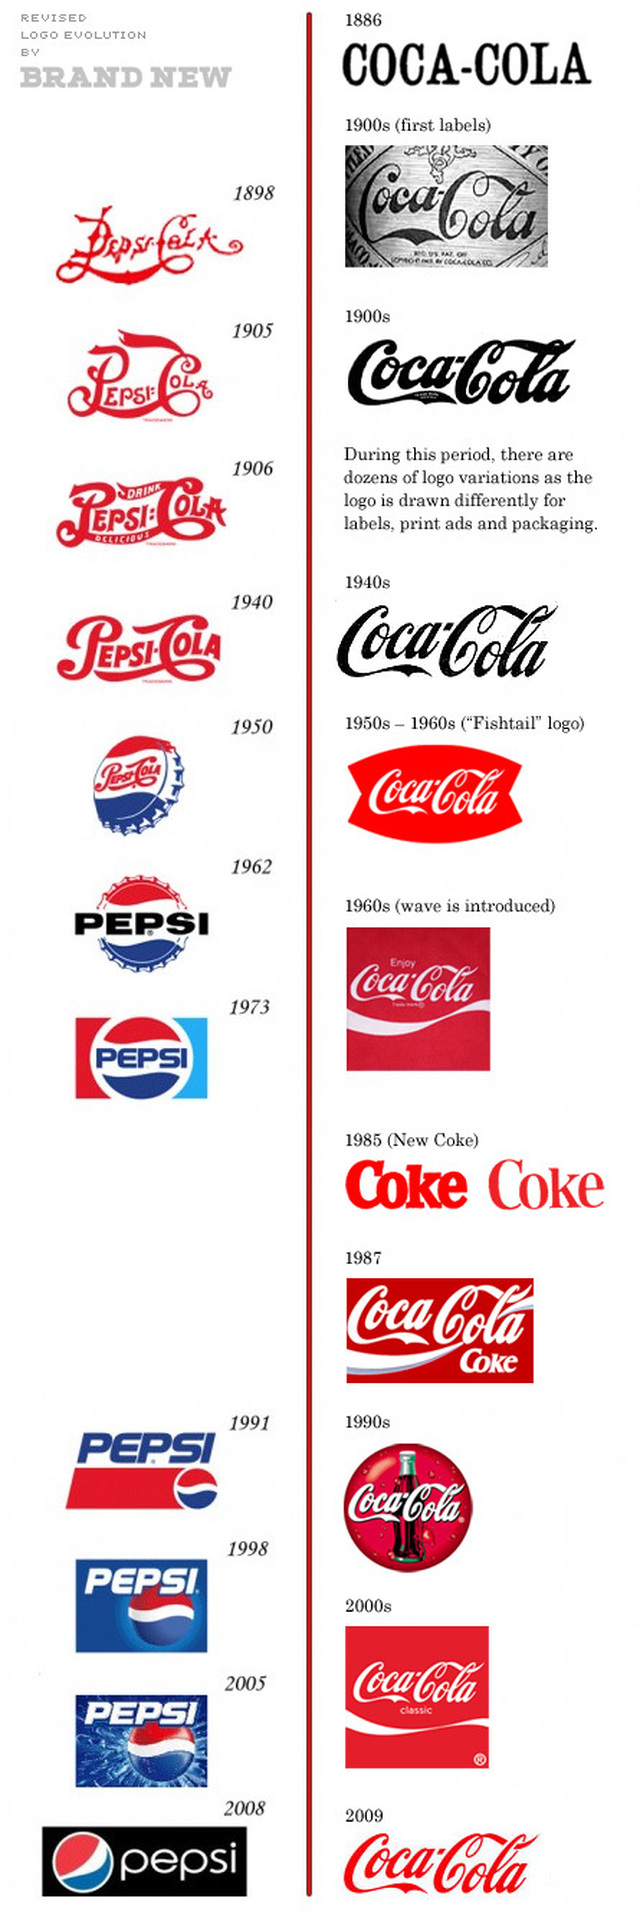 Coca cola vs Pepsi - revisited